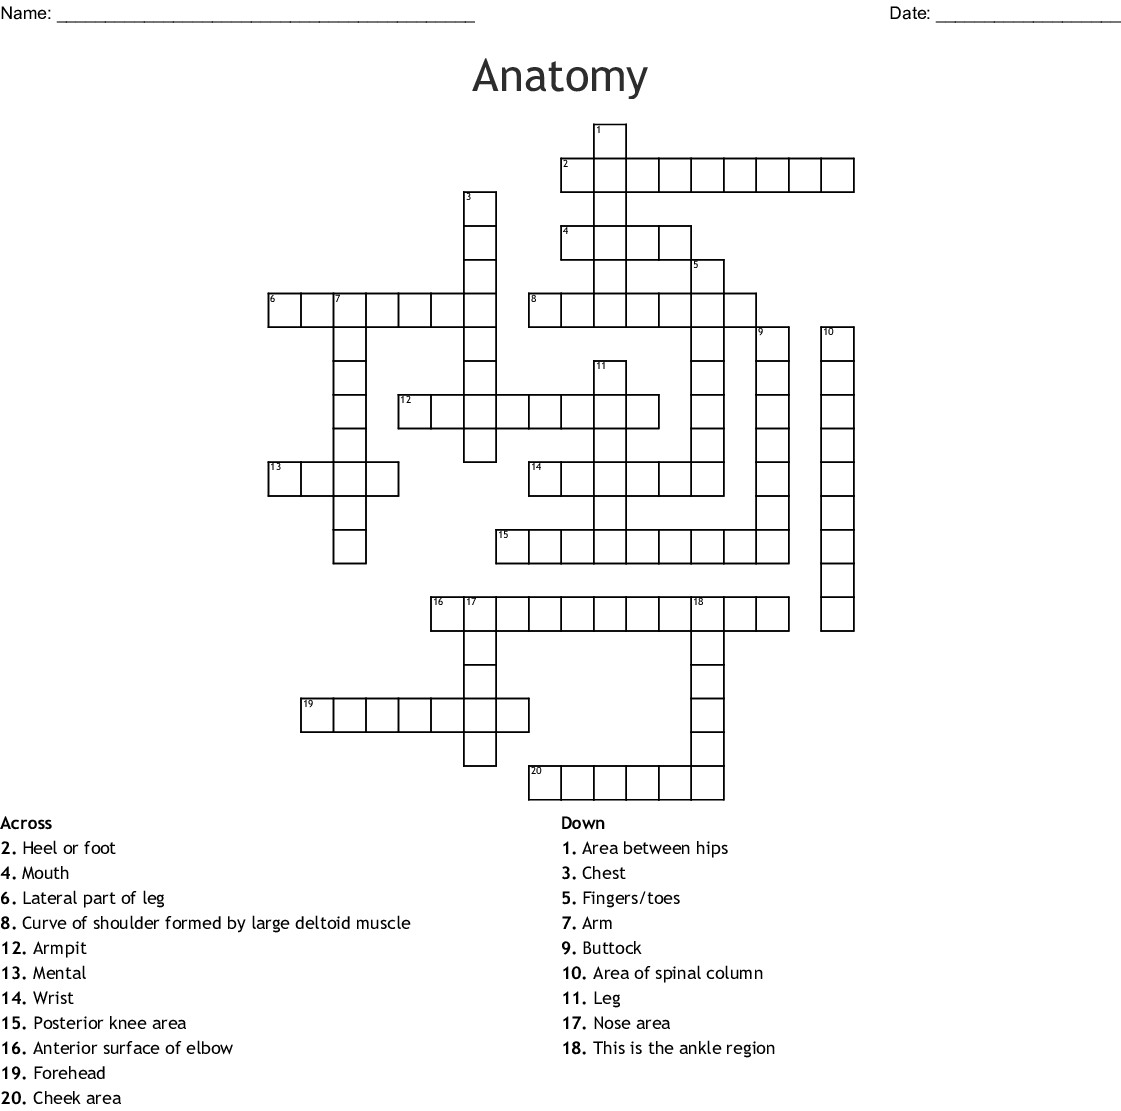 Human Anatomy Crossword Puzzle Printable